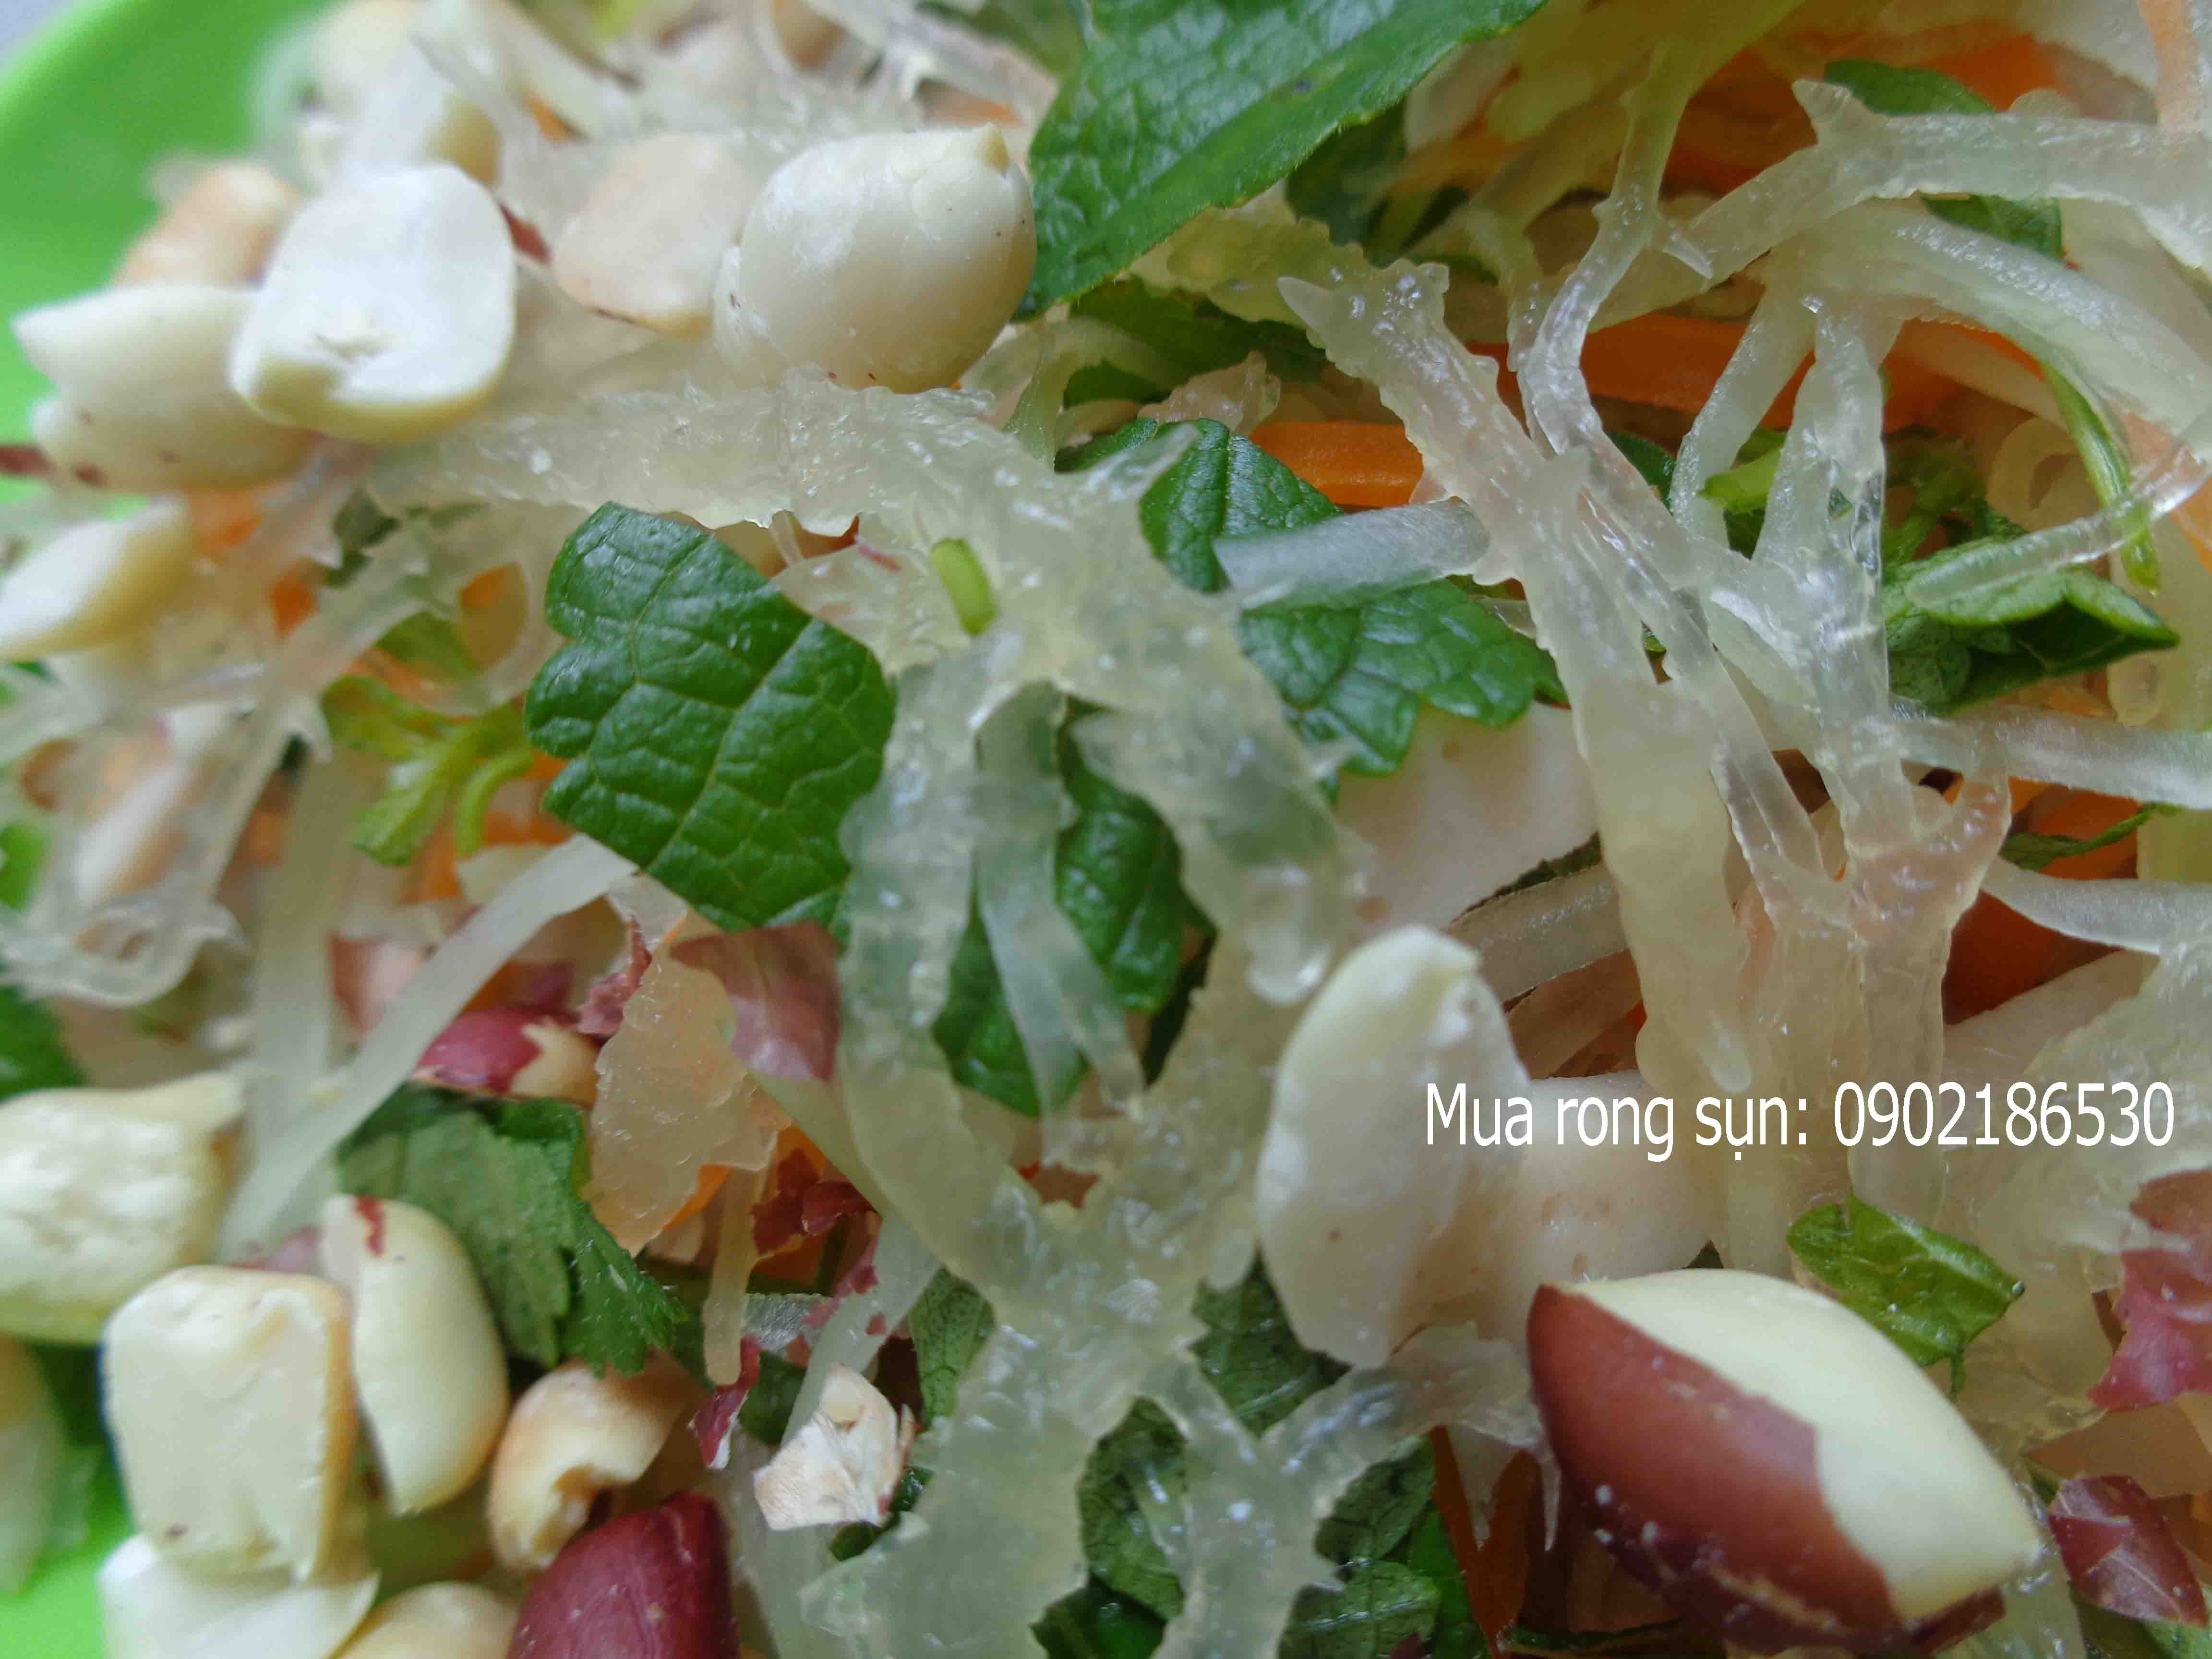 Rong sụn gai thường sử dụng trong các món nộm, cuốn, salad